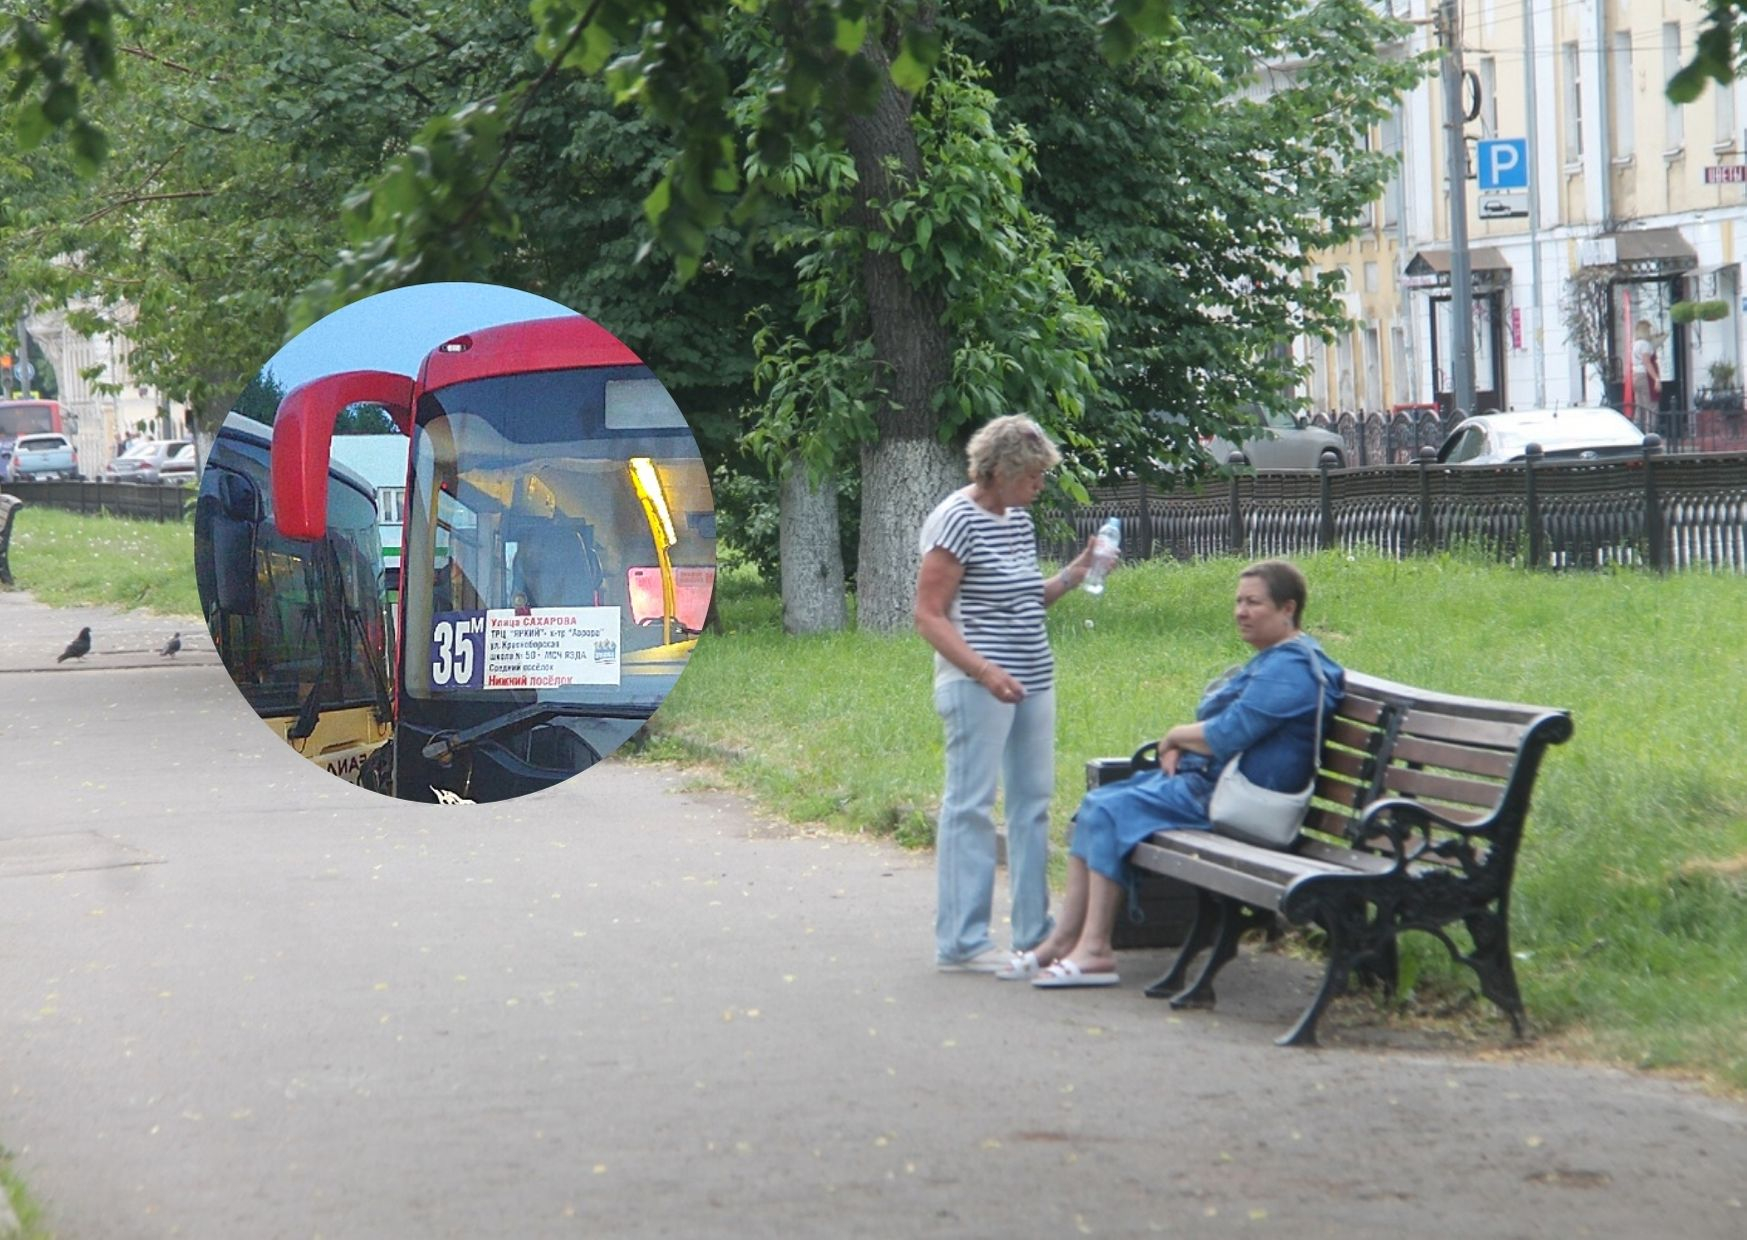 «Верните маршрутку»: ярославцы в ужасе от расписания 35 автобуса